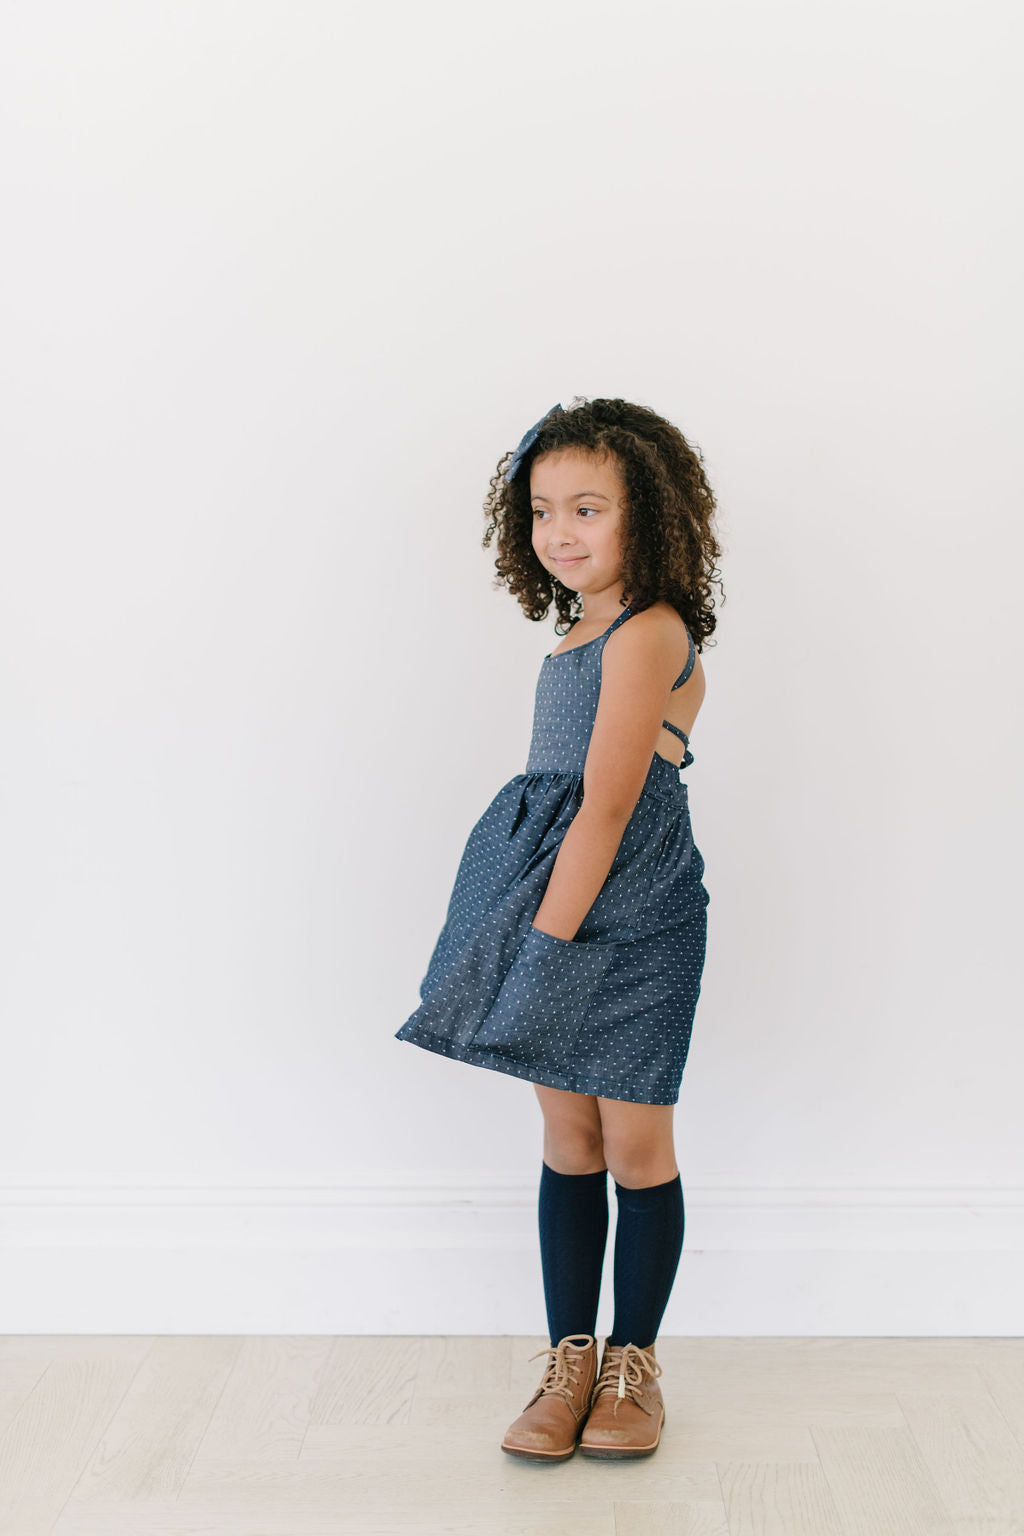 Freya Dress with Market Pockets in 'Vanilla Bean' - Ready To Ship